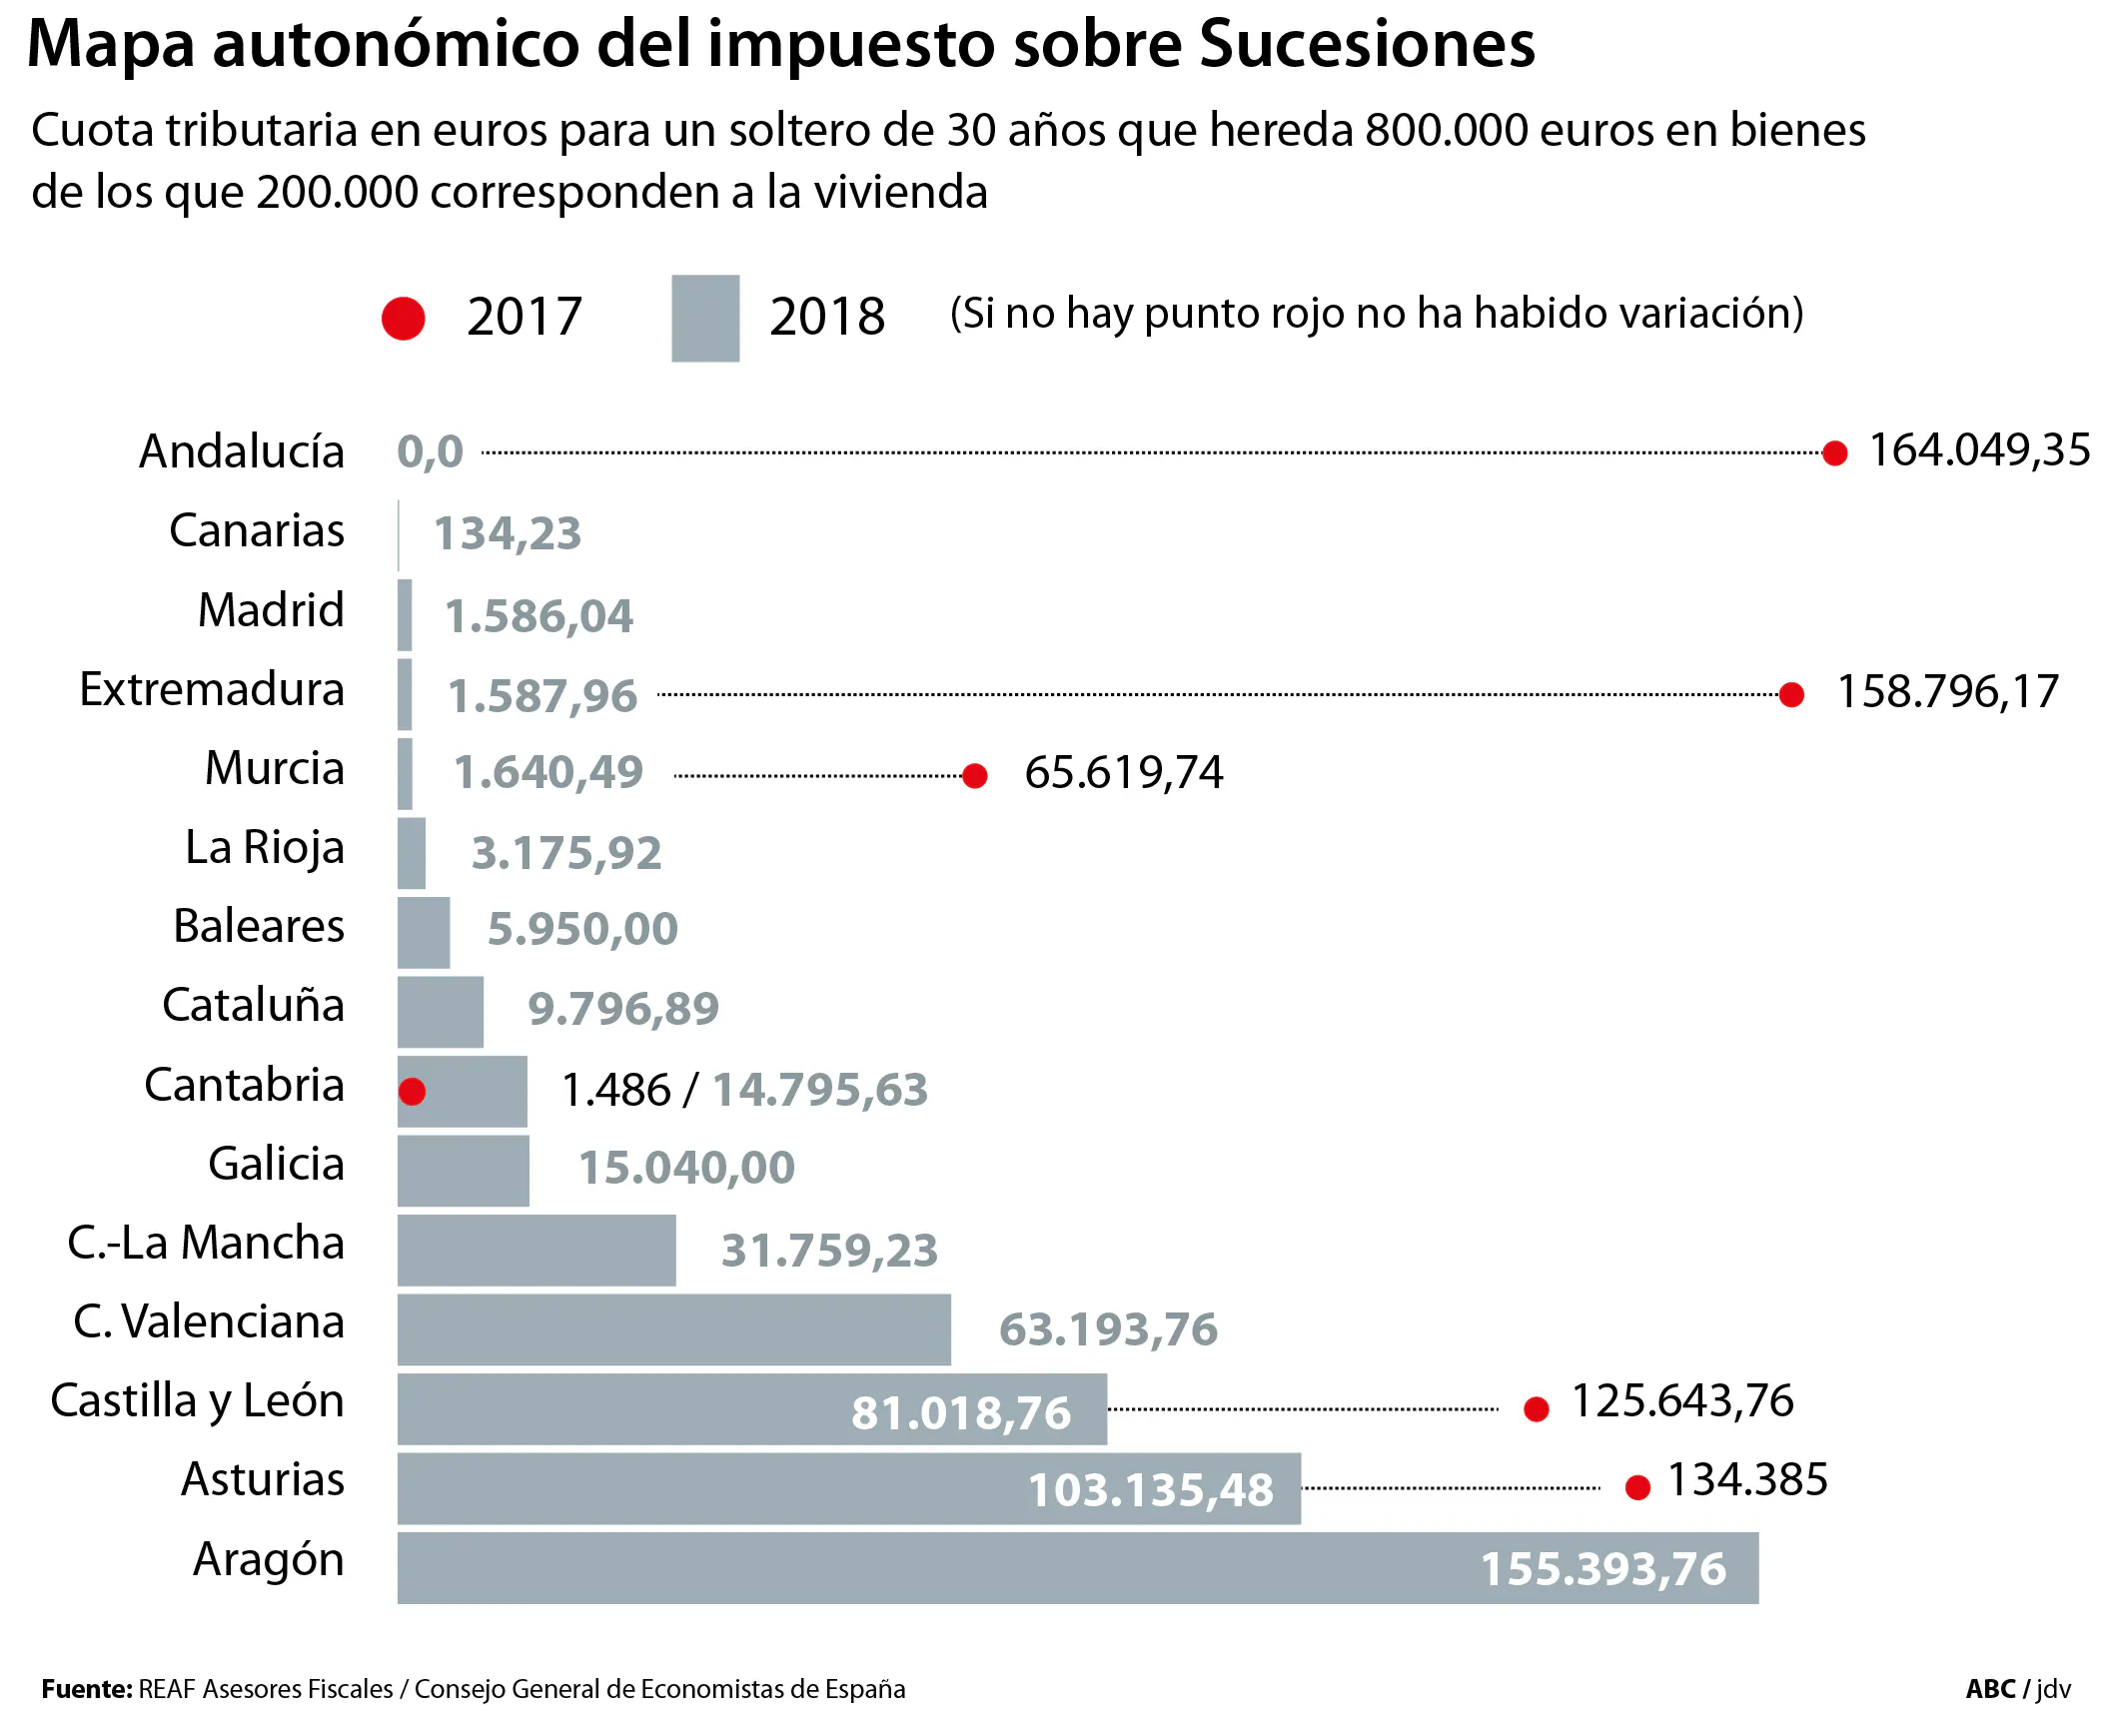 Andalucía desbanca a Madrid como oasis fiscal en Sucesiones